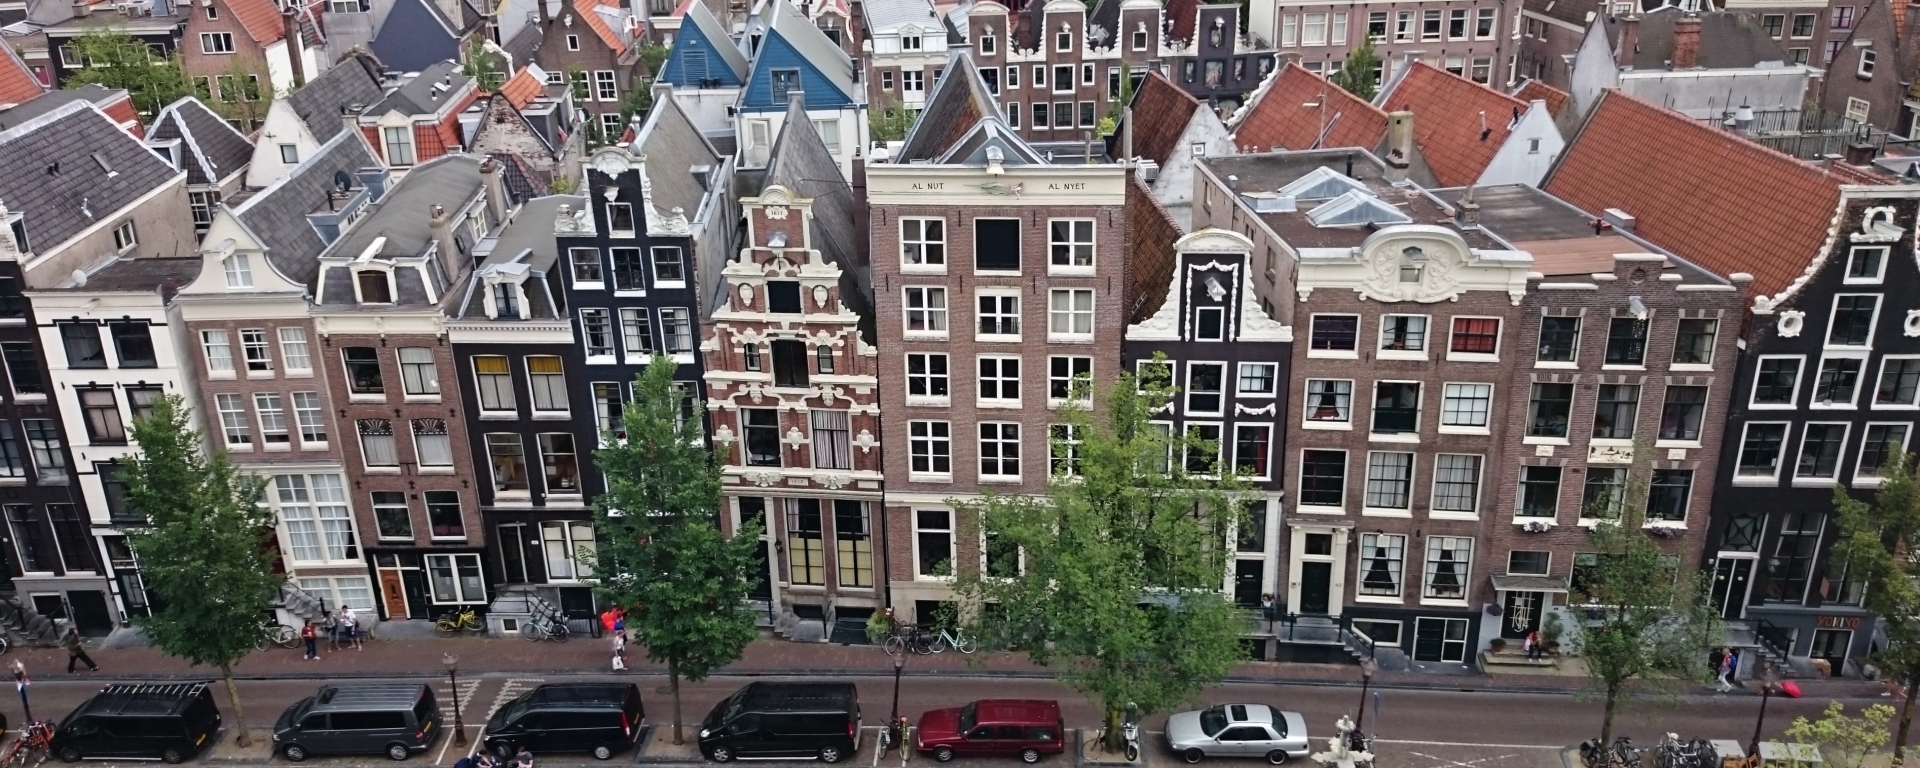 Oudezijdsvoorburgwal Amsterdam